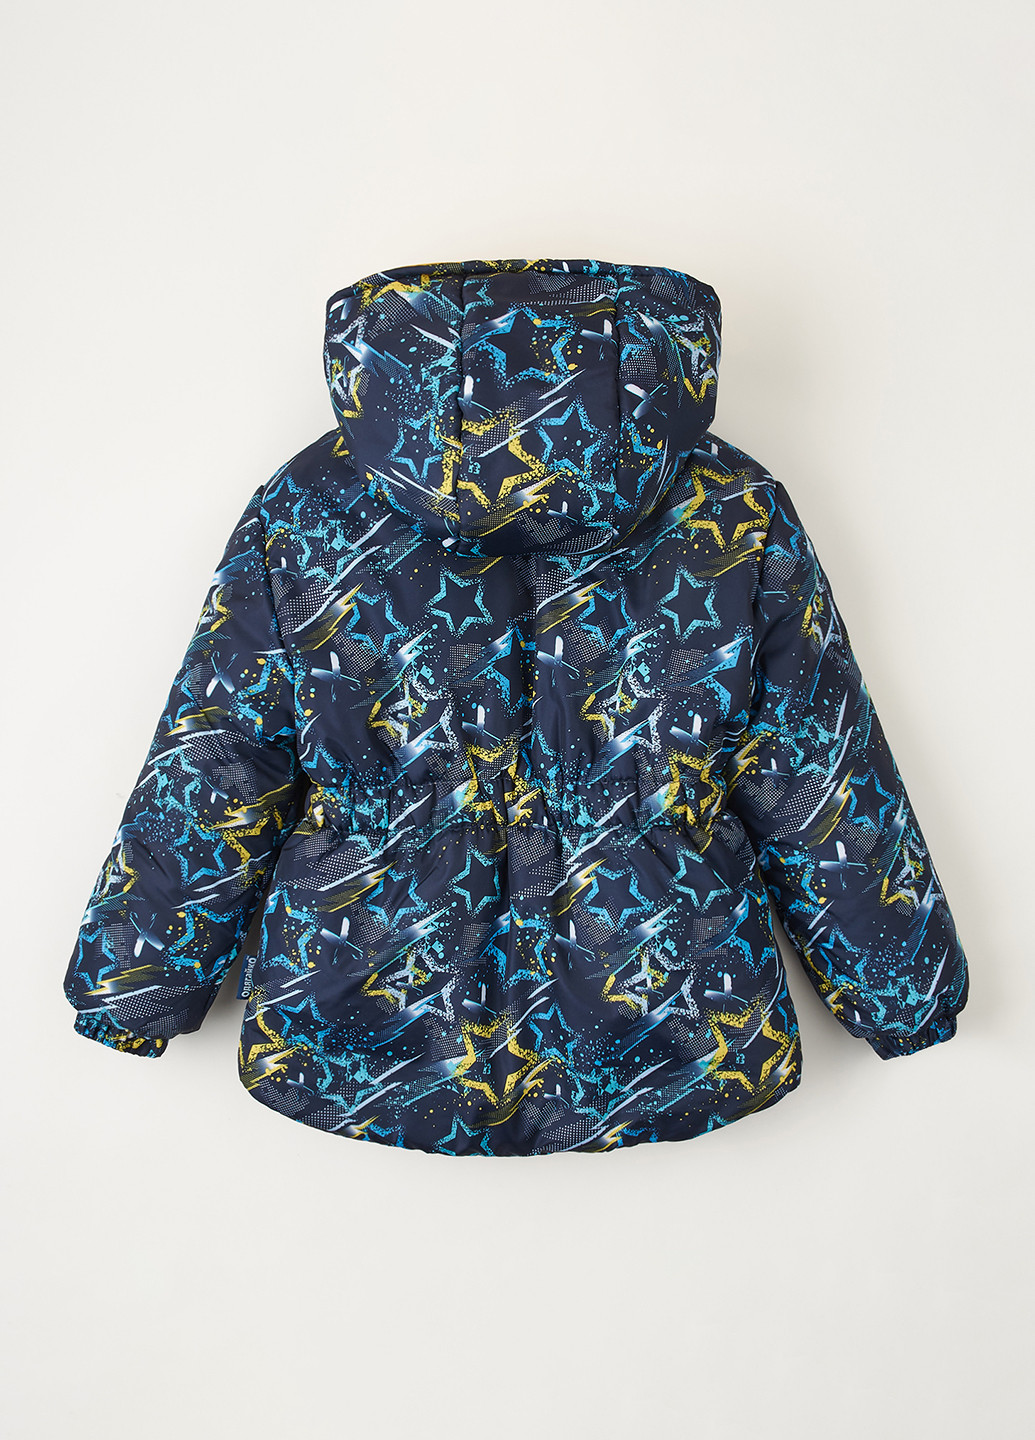 Синяя зимняя куртка Одягайко